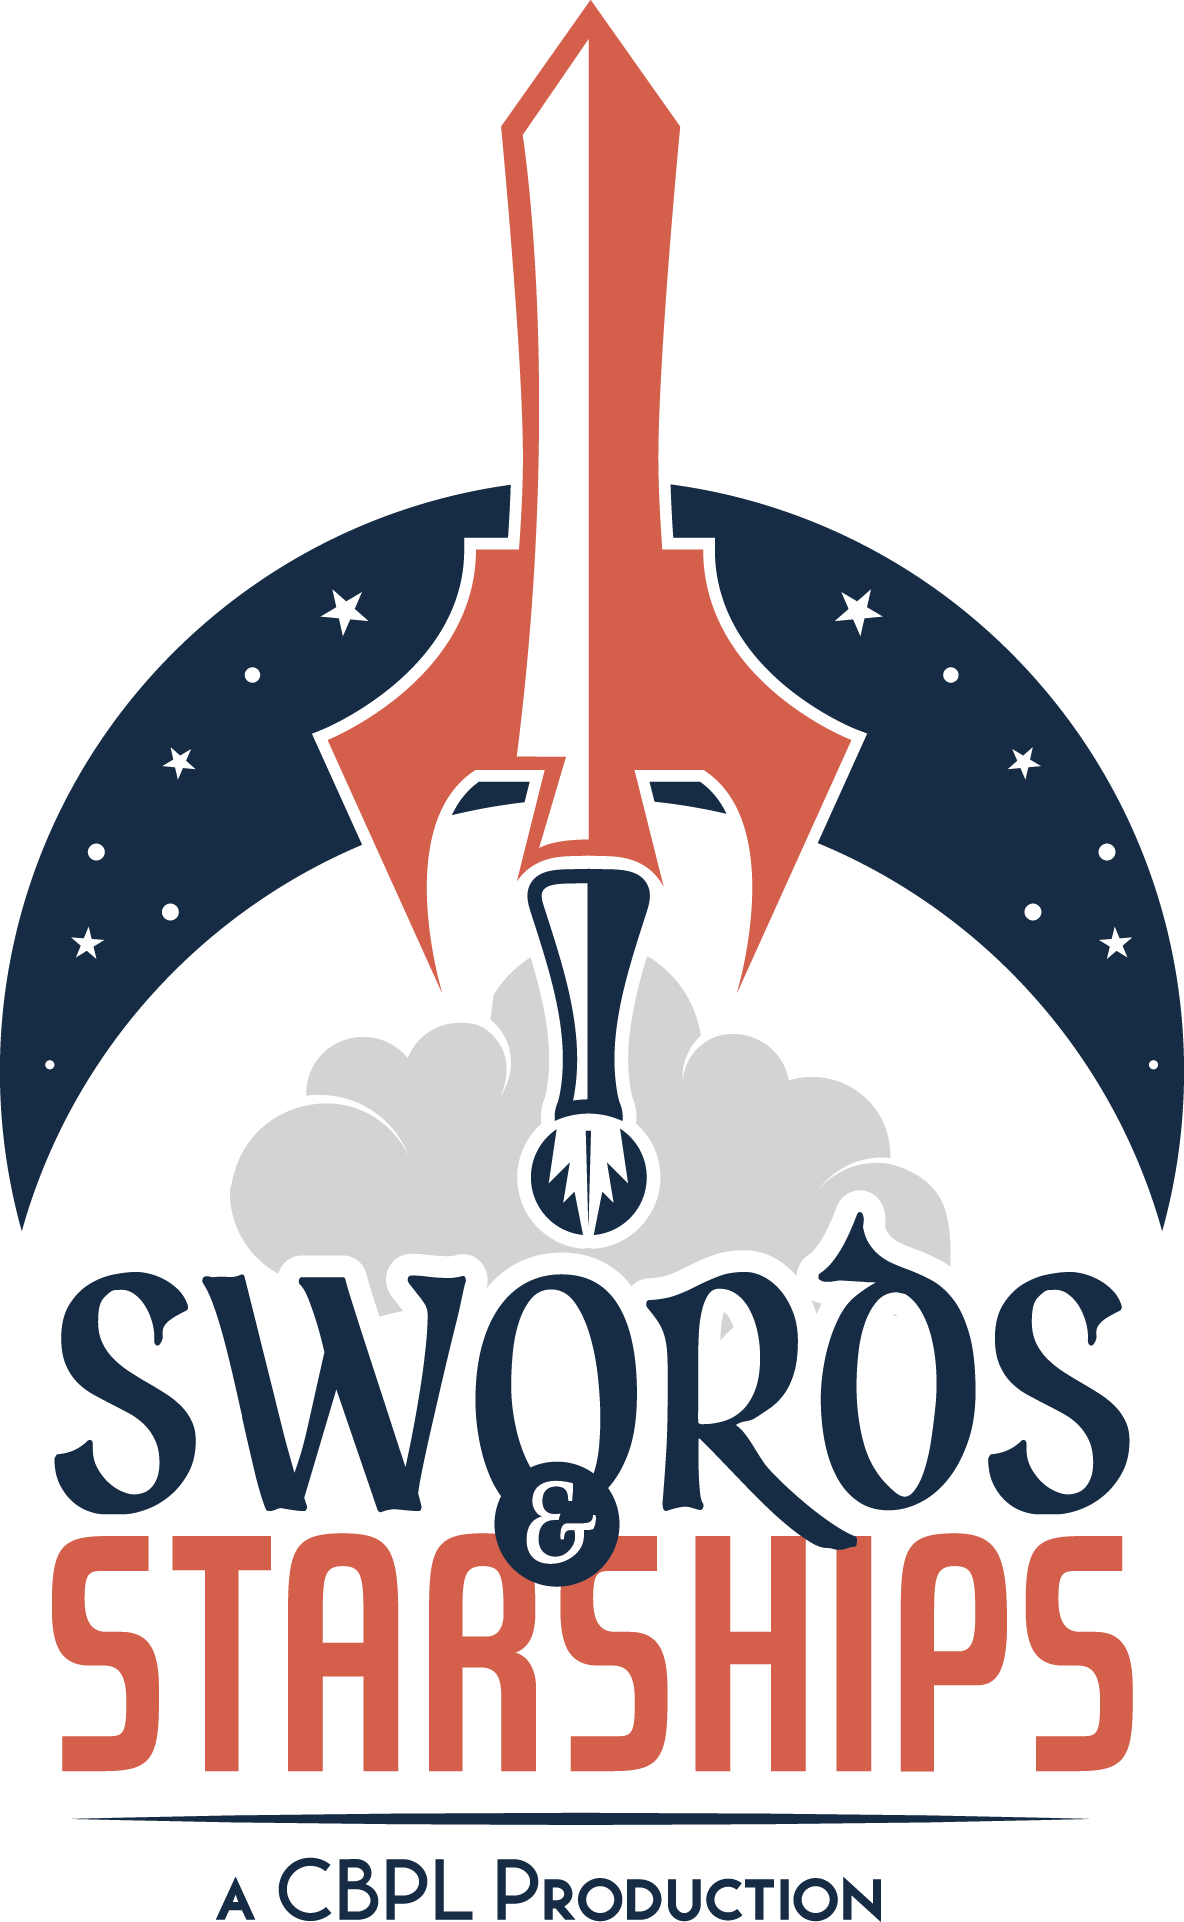 Swords & Starships Podcast